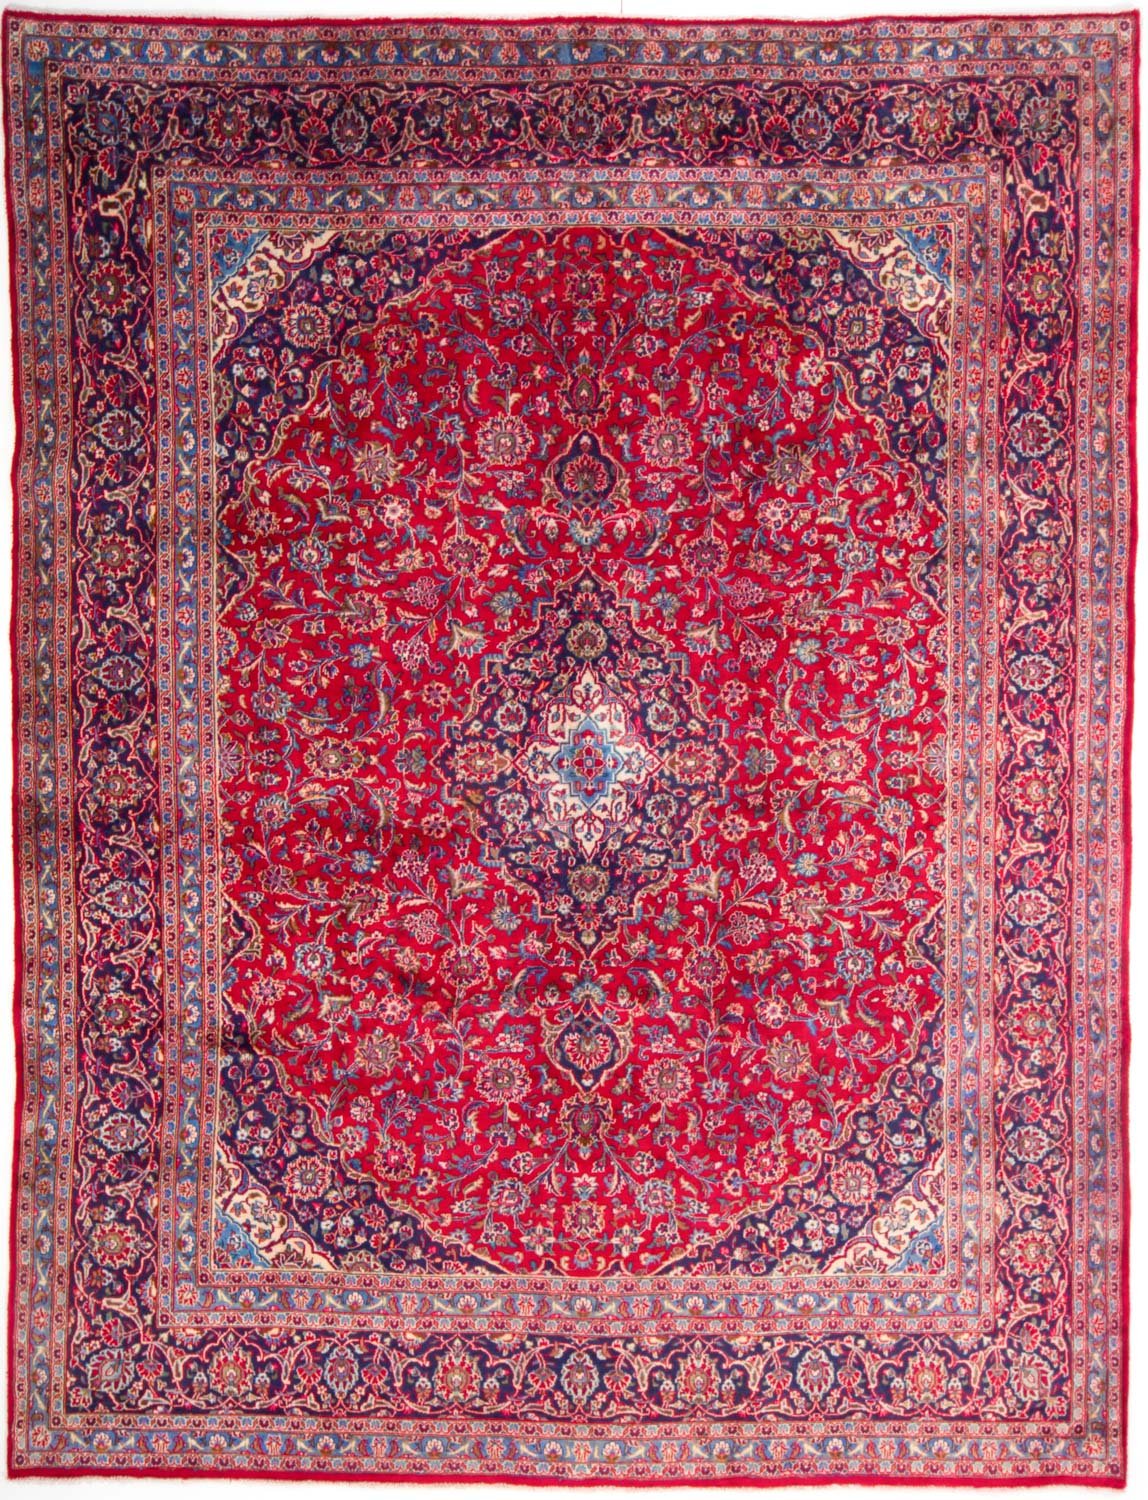 Vader fage september Vader fage Perzische tapijten kopen? Zo herken je zelf een écht Perzisch tapijt (7  tips) | Glamourista - kapsels